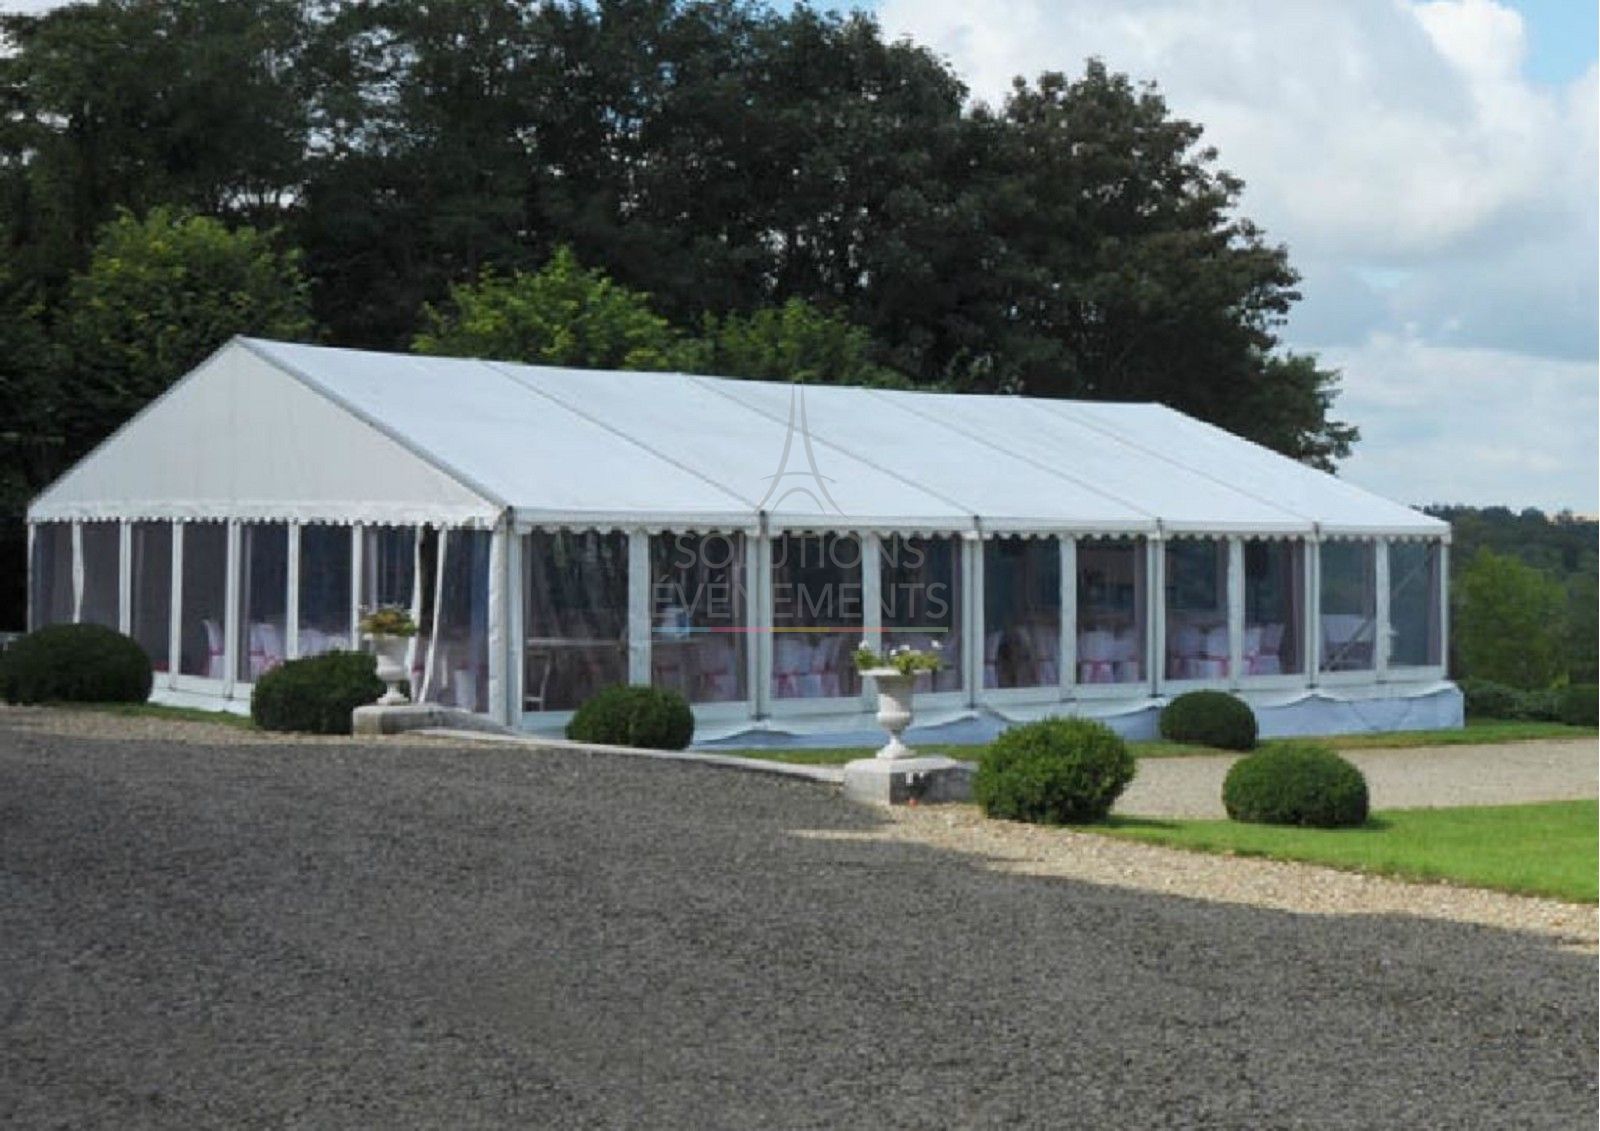 Location Chapiteau Tente Reception Evenement